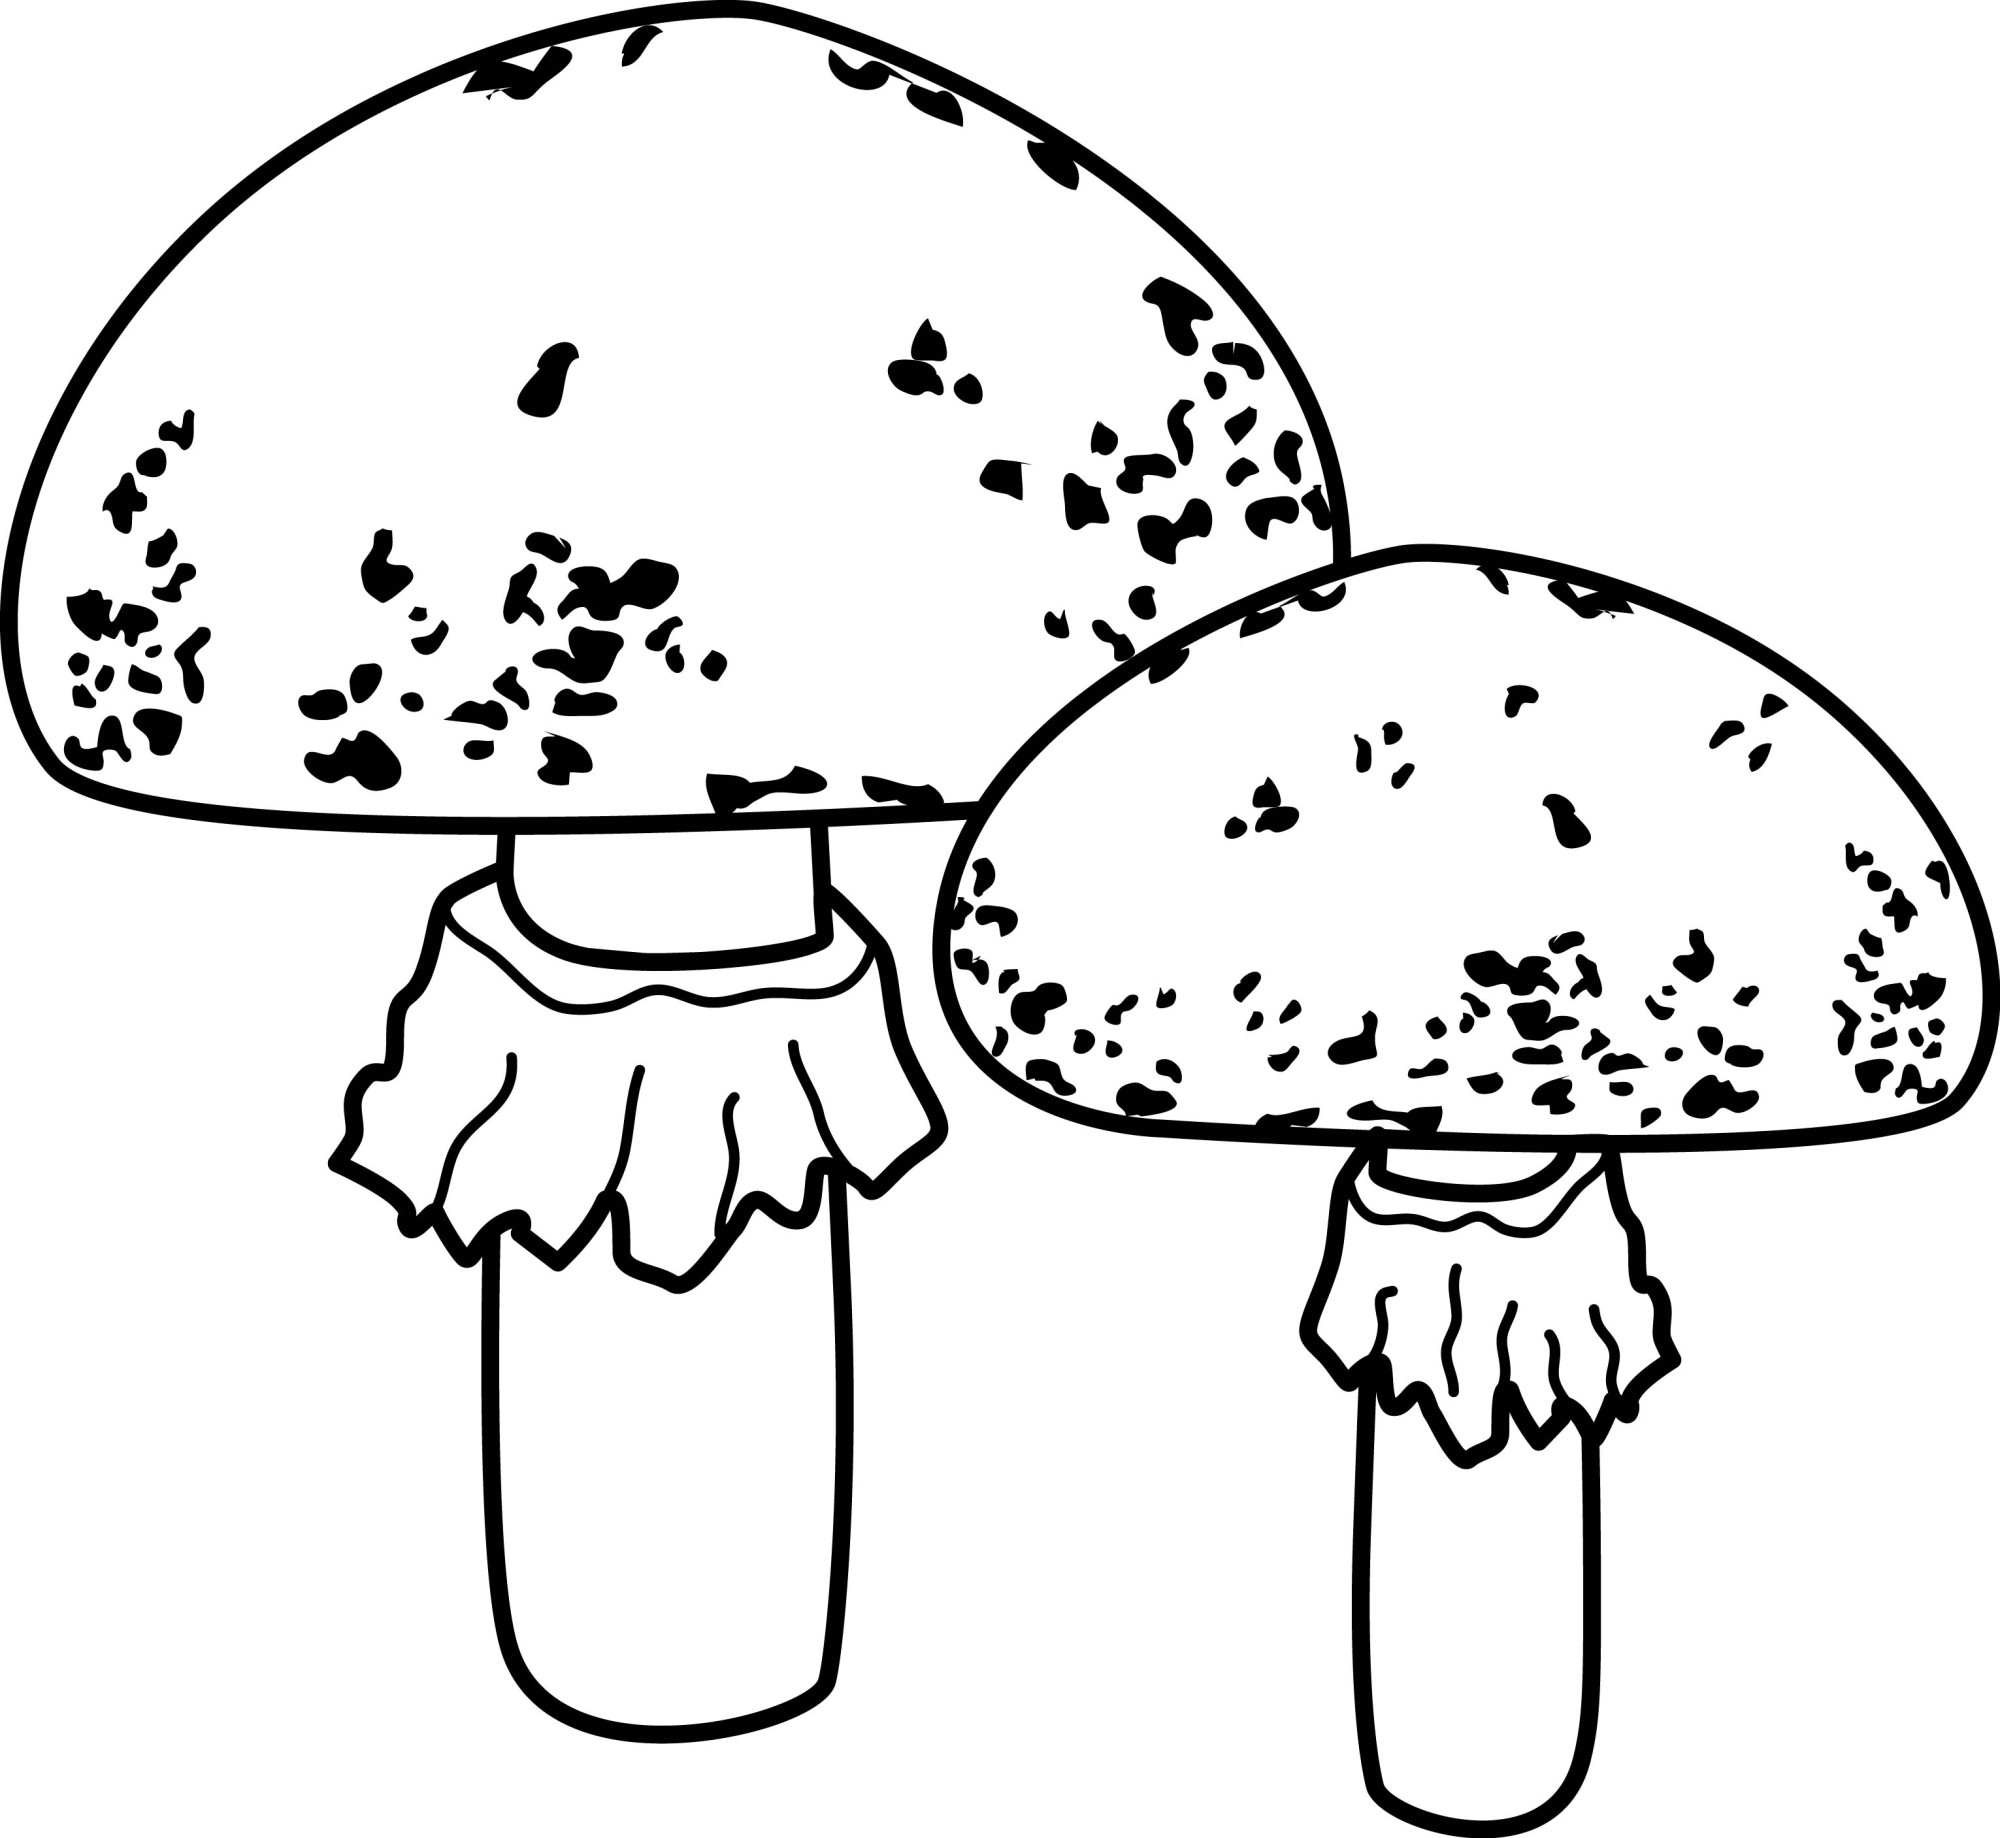 Раскраска для детей: два гриба мухомора